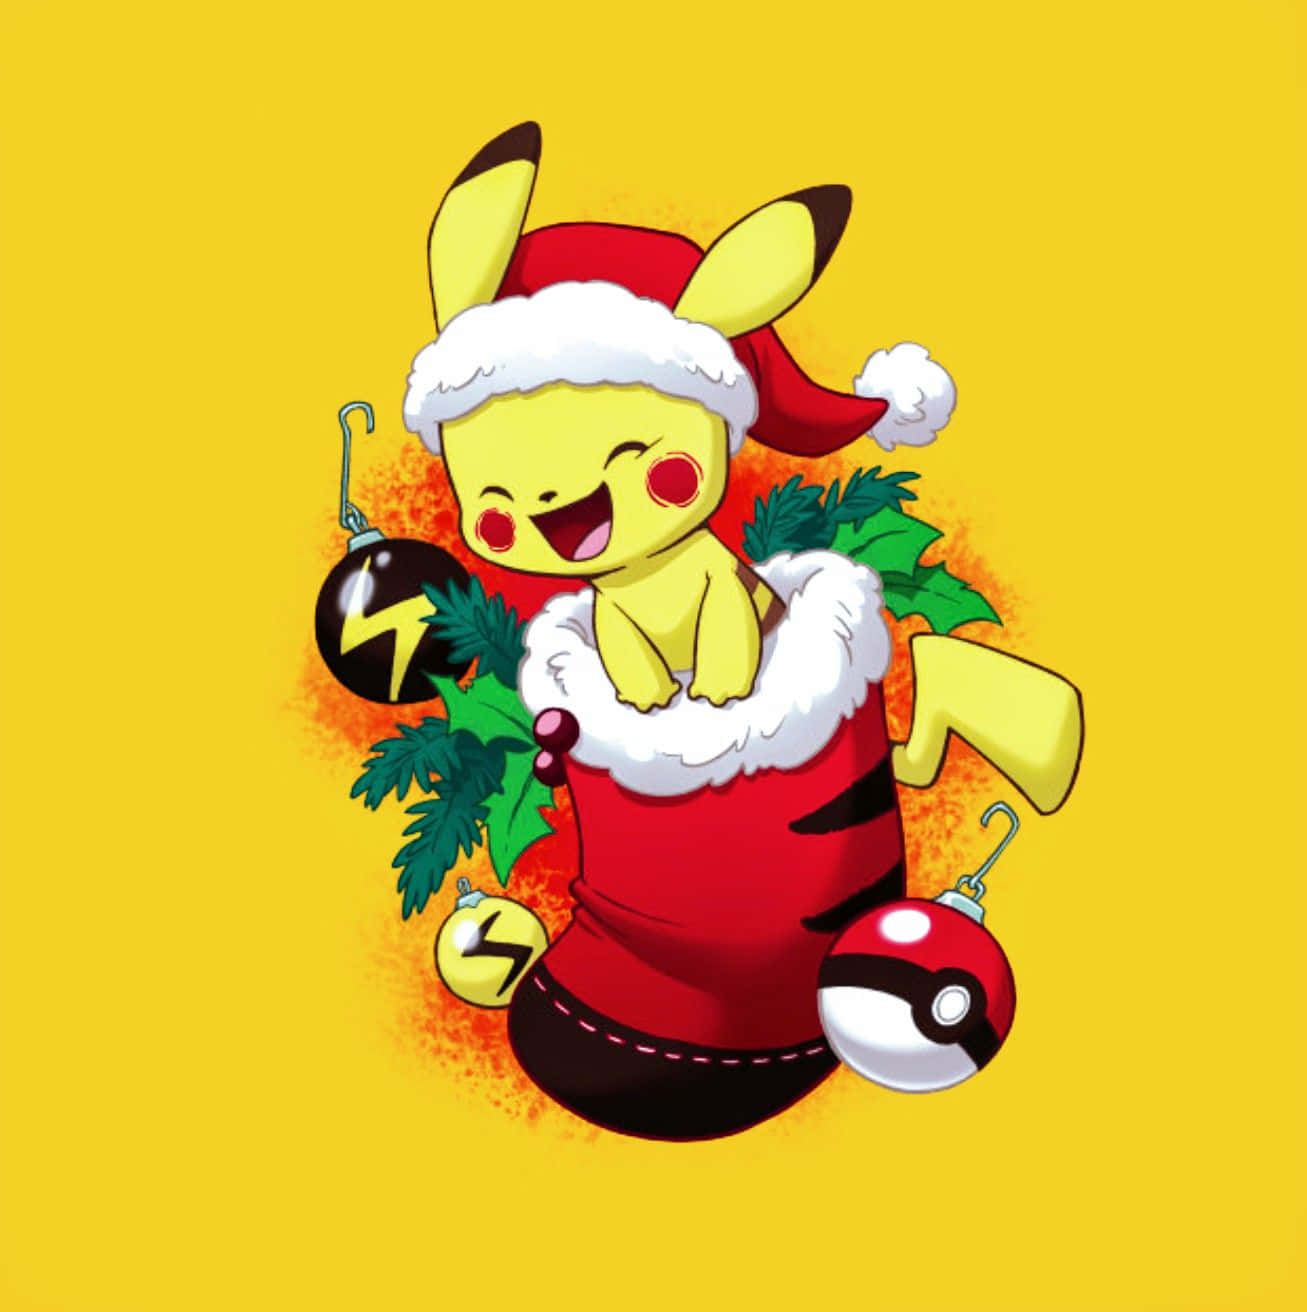 Pokémonweihnachts-pikachu In Weihnachtssocke Wallpaper